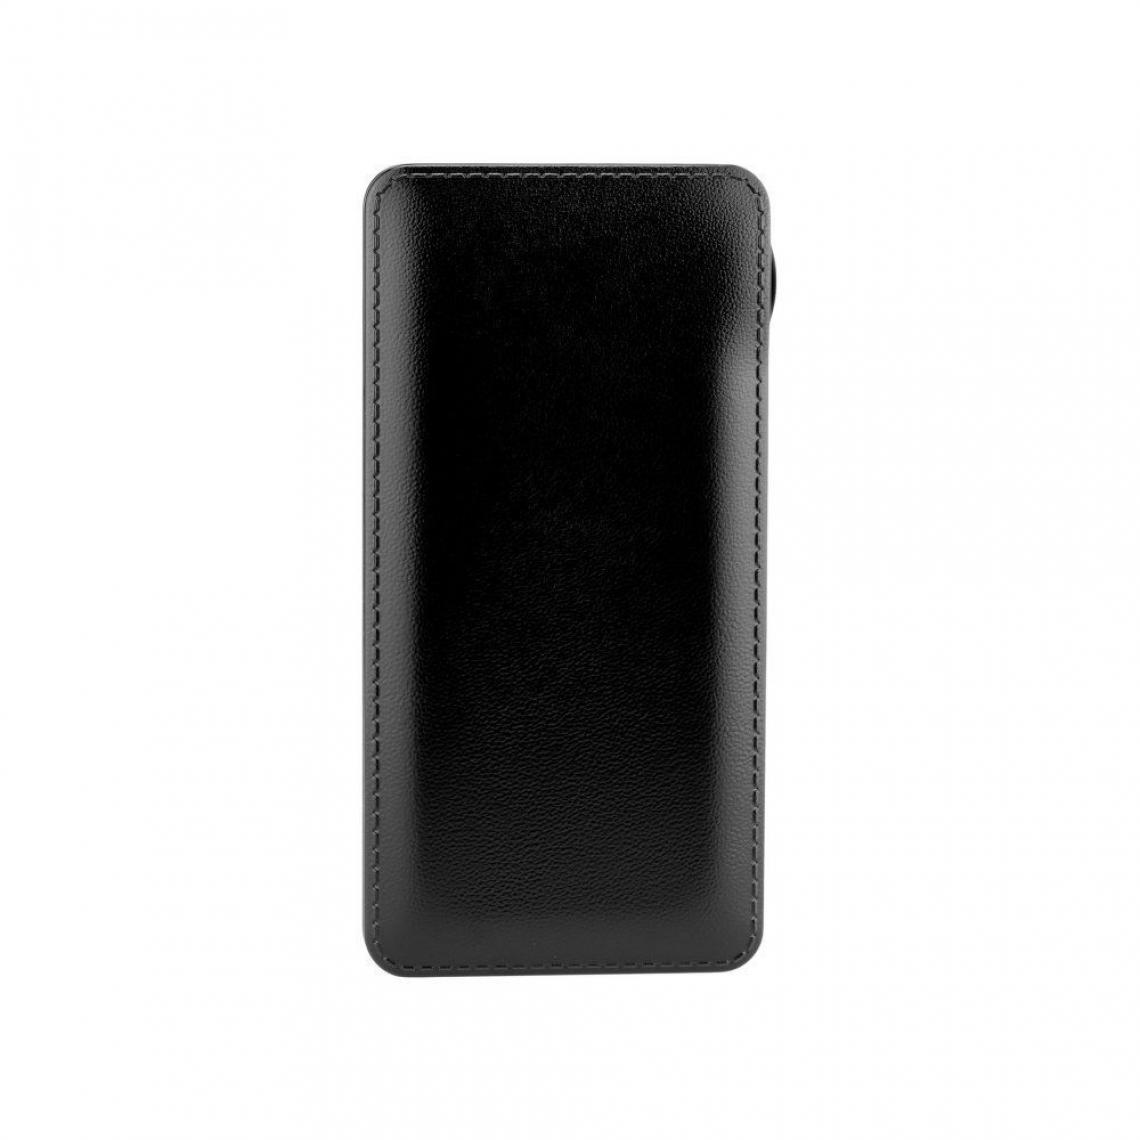 Ozzzo - Chargeur batterie externe 30000 mAh powerbank ozzzo noir pour LG Stylo 4 Plus - Autres accessoires smartphone